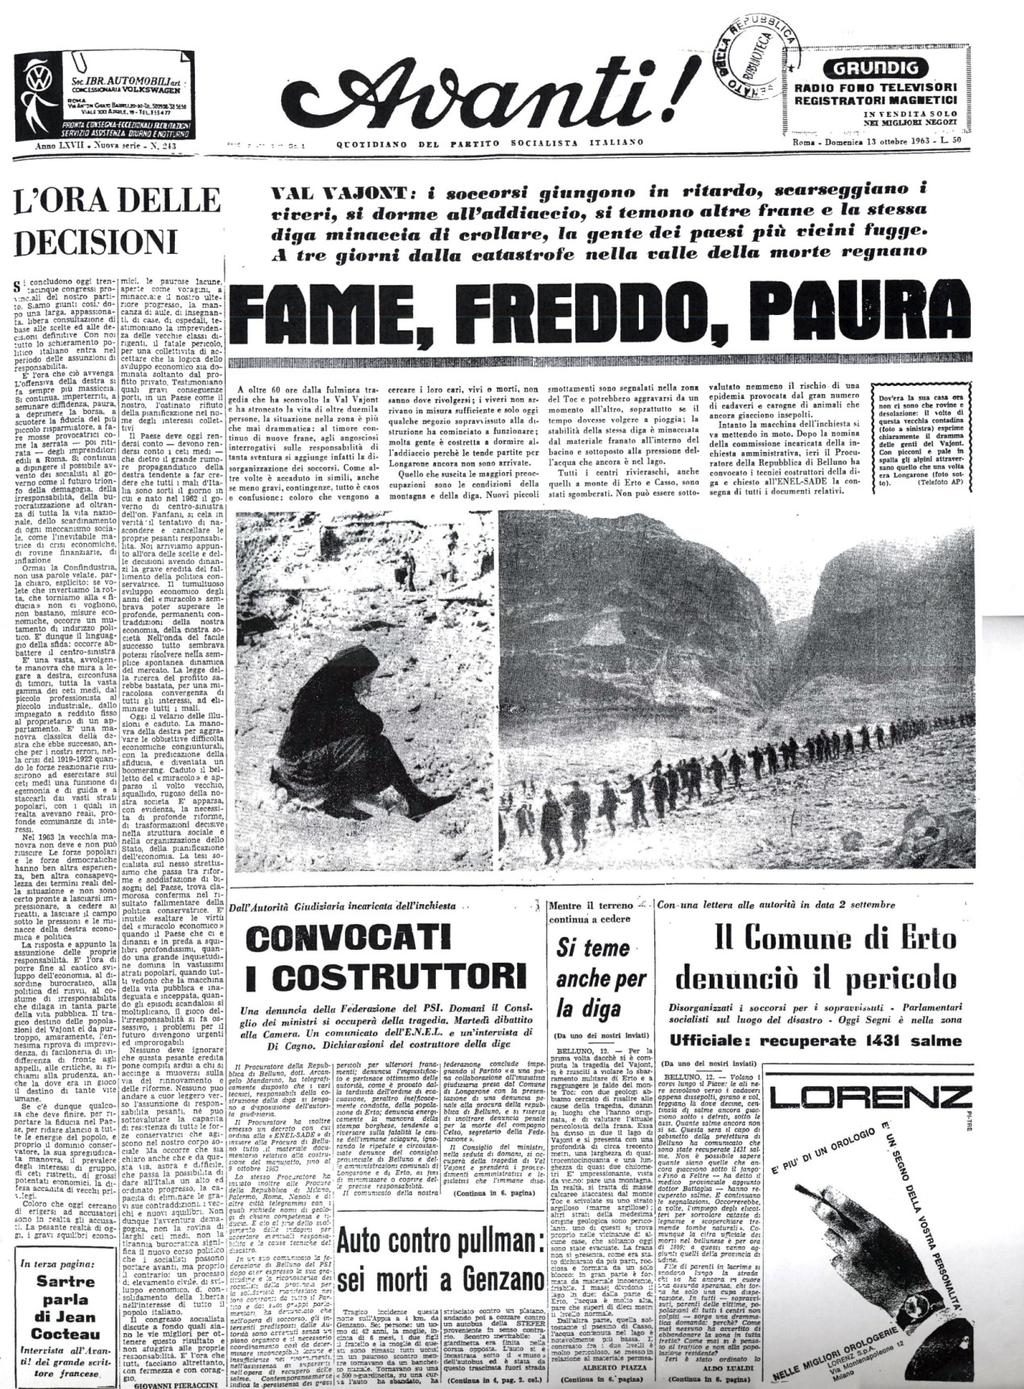 13 ottobre 1963: L Avanti! descrive la condizione di incertezza che a distanza di giorni dal disastro ancora regnano sui luoghi colpiti e si interroga sulle responsabilità di quanto accaduto.